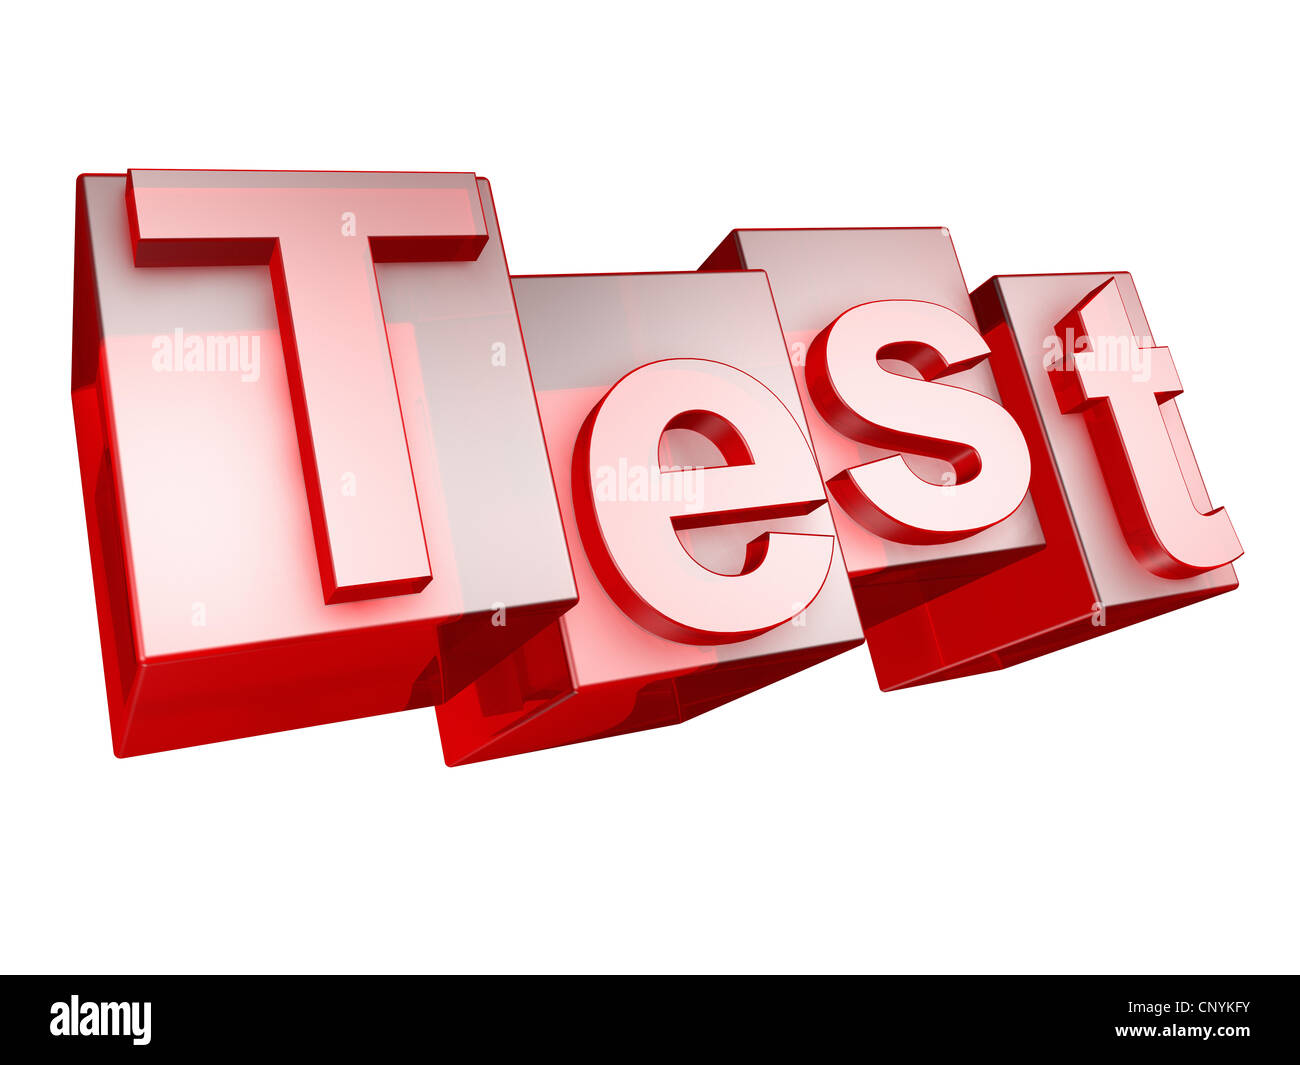 Le mot Test en 3D lettres sur fond blanc - das Wort aus TEST 3D Buchstaben, freigestellt gesetzt auf weißem Hintergrund Banque D'Images